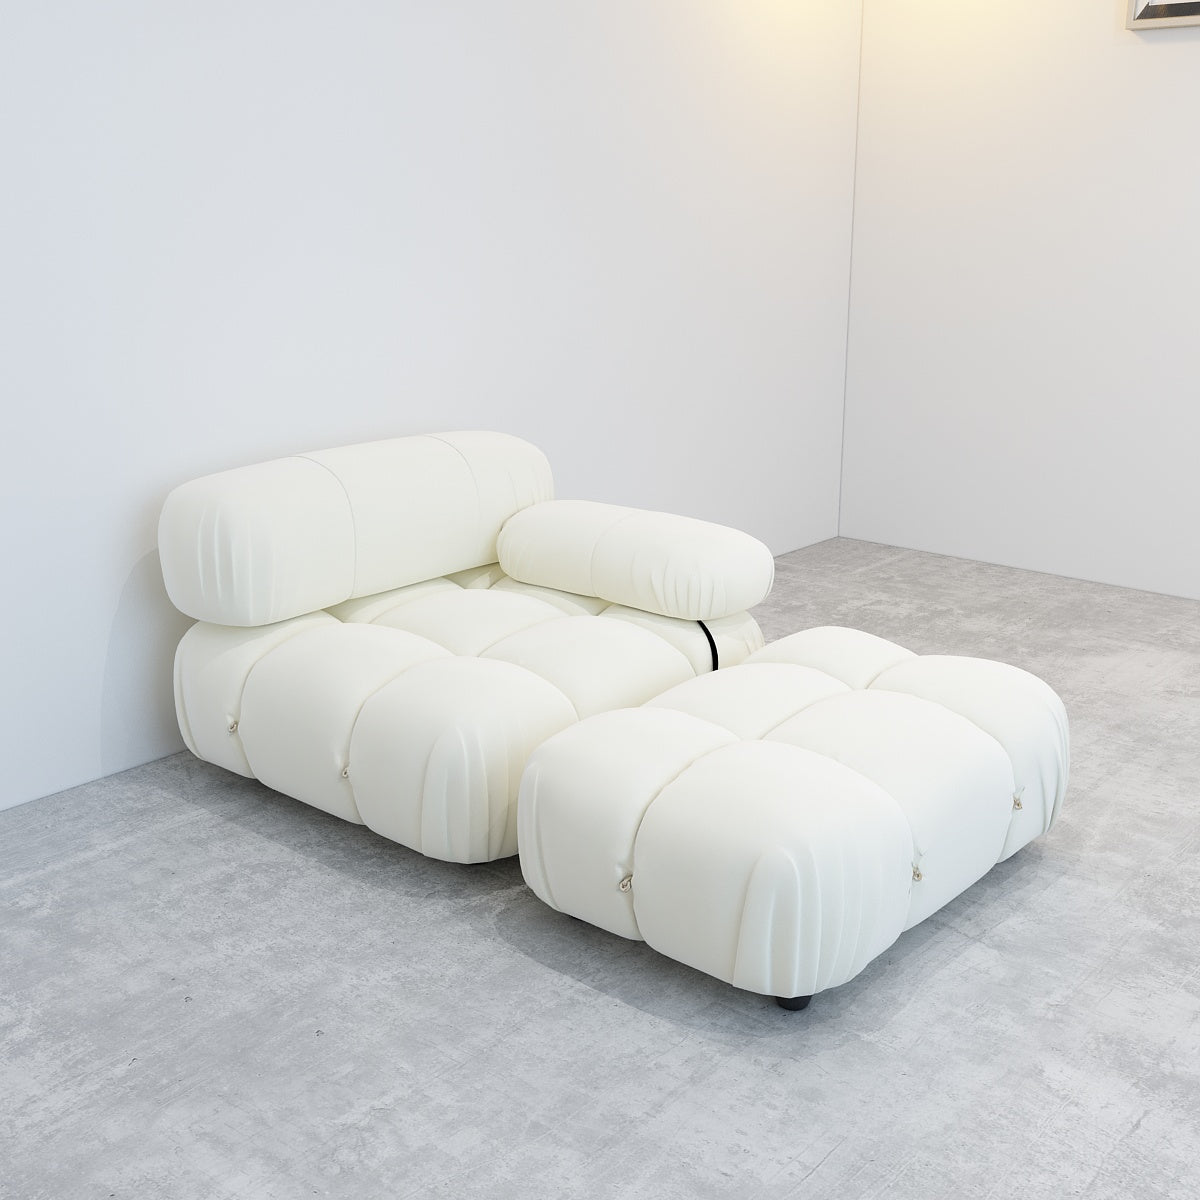 JANNAHSTUDIOS CAMILLE Modular [Mario Bellini] Designer Inspired Camaleonda Sofa (Chaise)